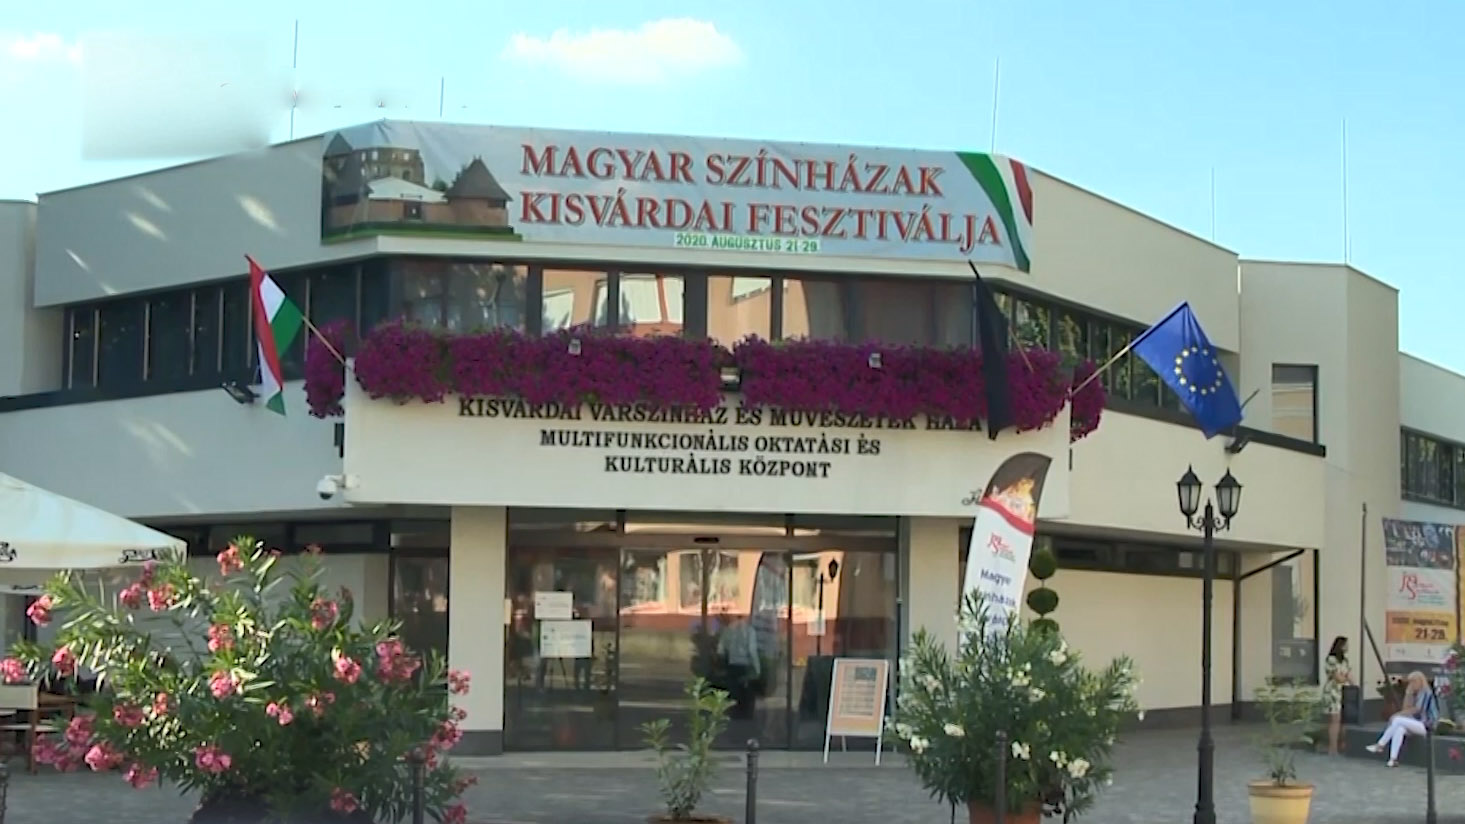 Закарпатський обласний угорський драматичний театр взяв участь у фестивалі угорських театрів у м. Кішварда